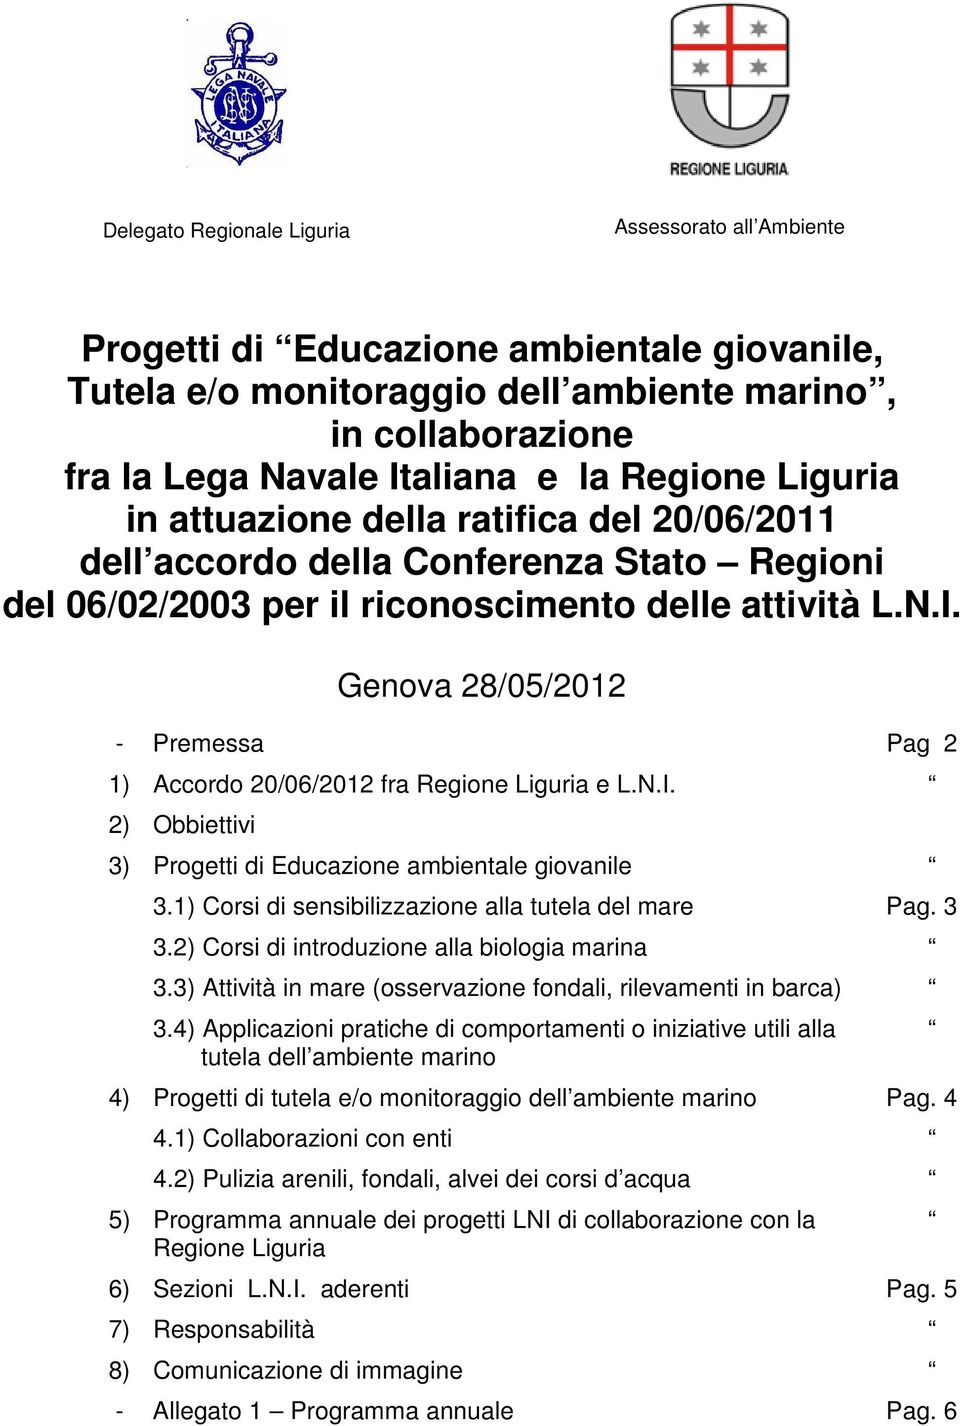 Genova 28/05/2012 - Premessa Pag 2 1) Accordo 20/06/2012 fra Regione Liguria e L.N.I. 2) Obbiettivi 3) Progetti di Educazione ambientale giovanile 3.